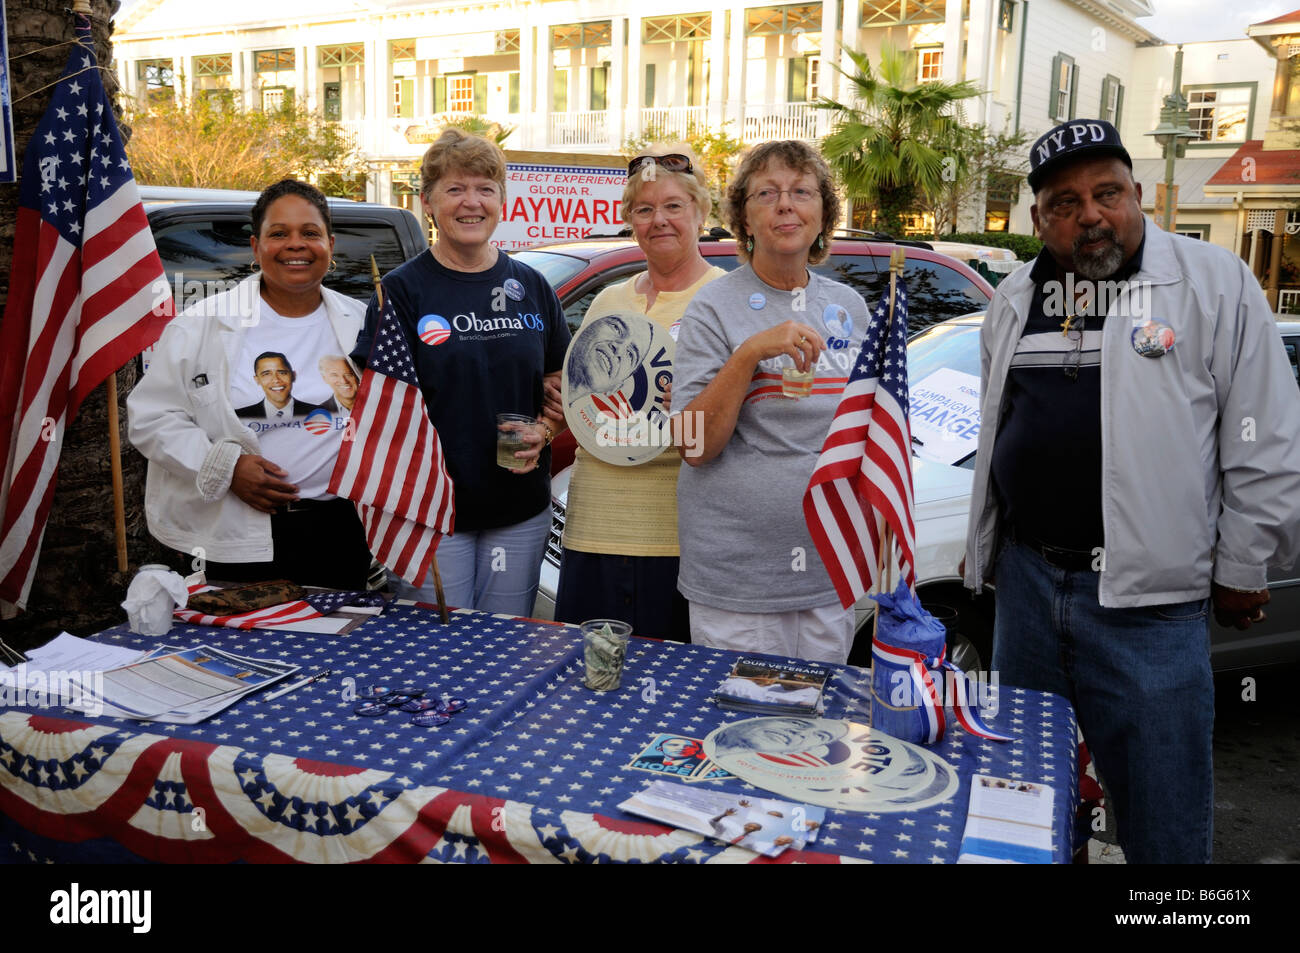 Obama-Kampagne Unterstützer Spendenaktionen in der Straße. Sumpter, die Landung der Dorf-Florida-Amerika-USA Stockfoto